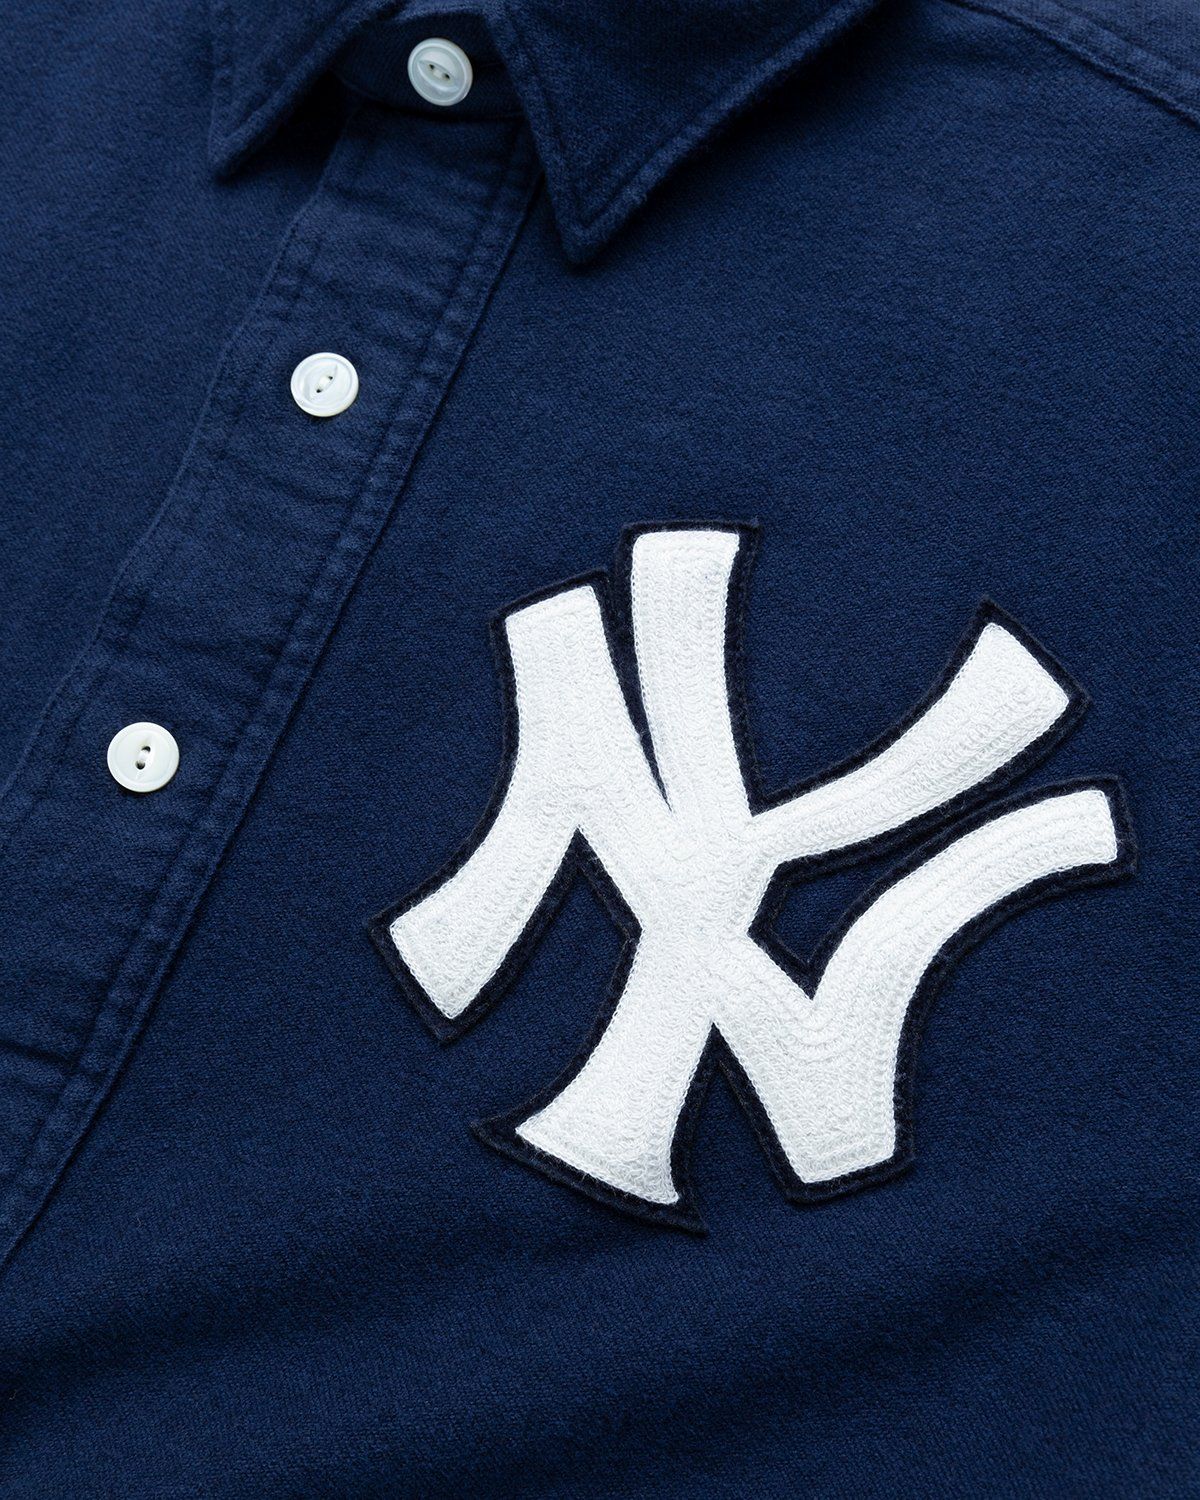 Ralph Lauren – Yankees Popover Shirt Navy